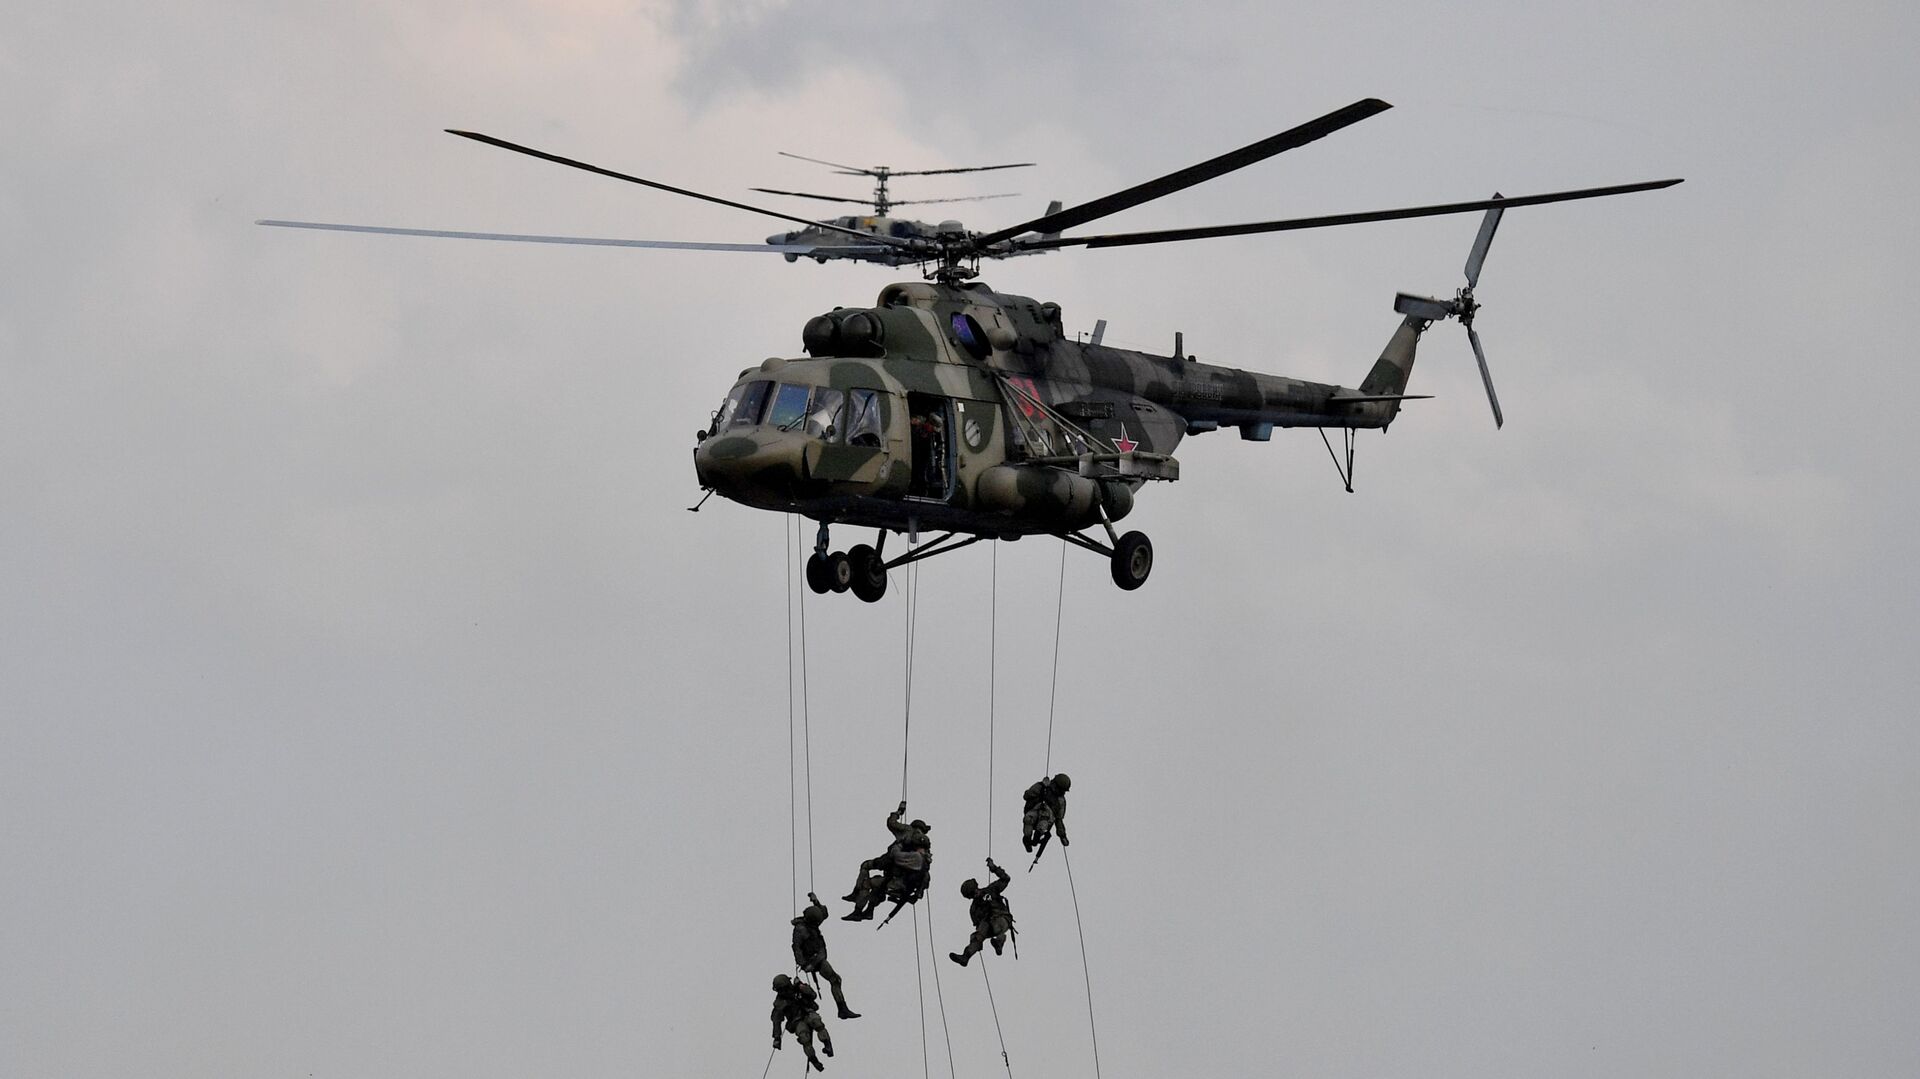 Военнослужащие высаживаются из вертолета Ми-8 во время основного этапа учений Запад-2021 на полигоне Мулино в Нижегородской области - Sputnik Таджикистан, 1920, 16.02.2022